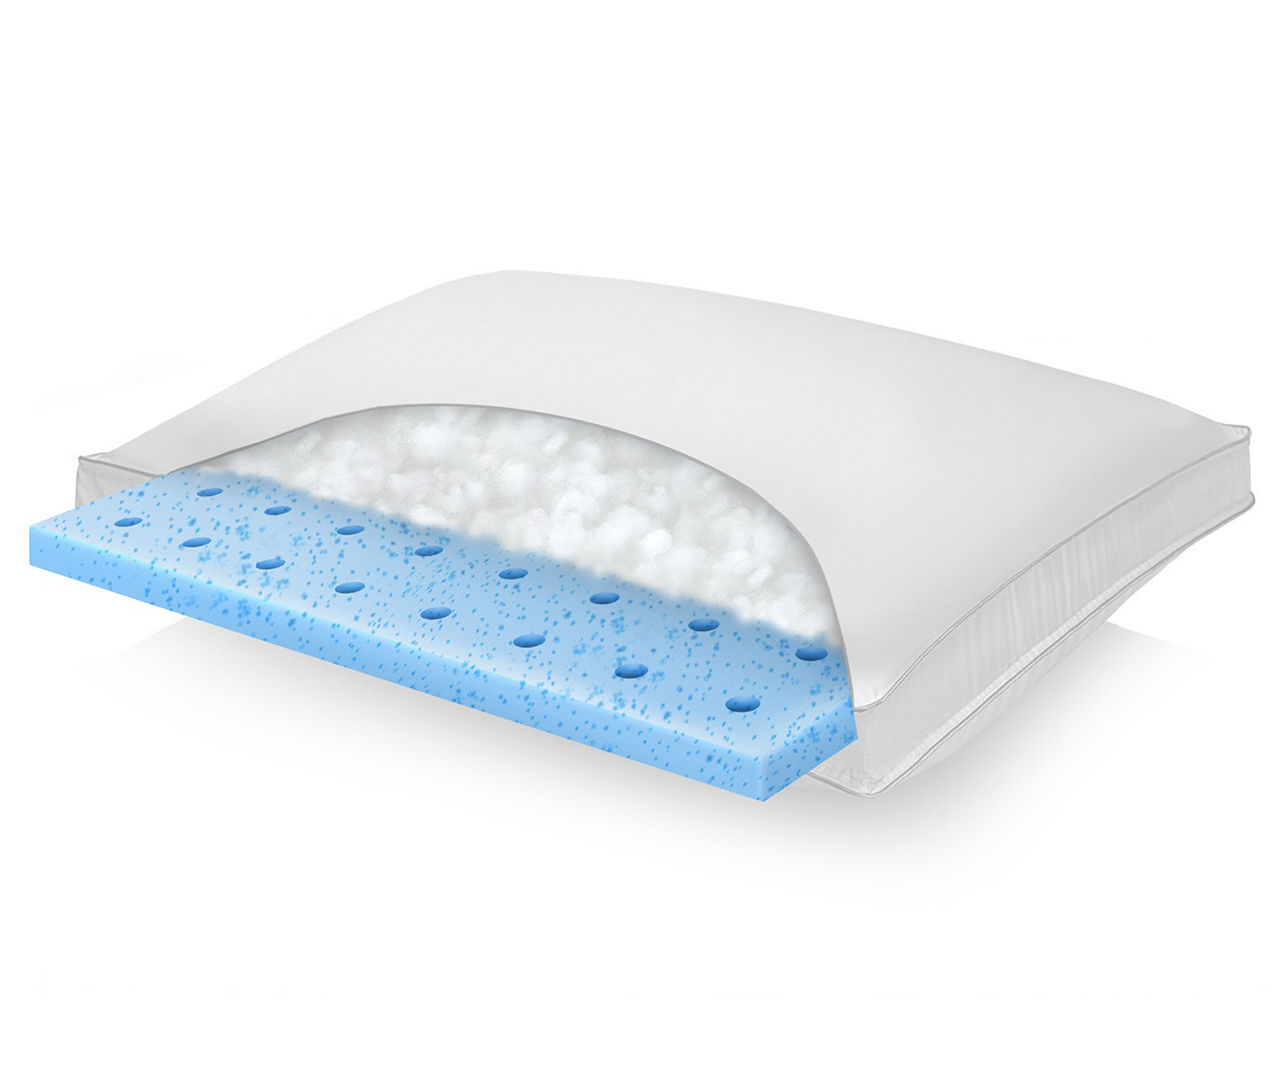 ZEO-SLEEP Neck Pillow, Sleeping Memory Foam Pillow